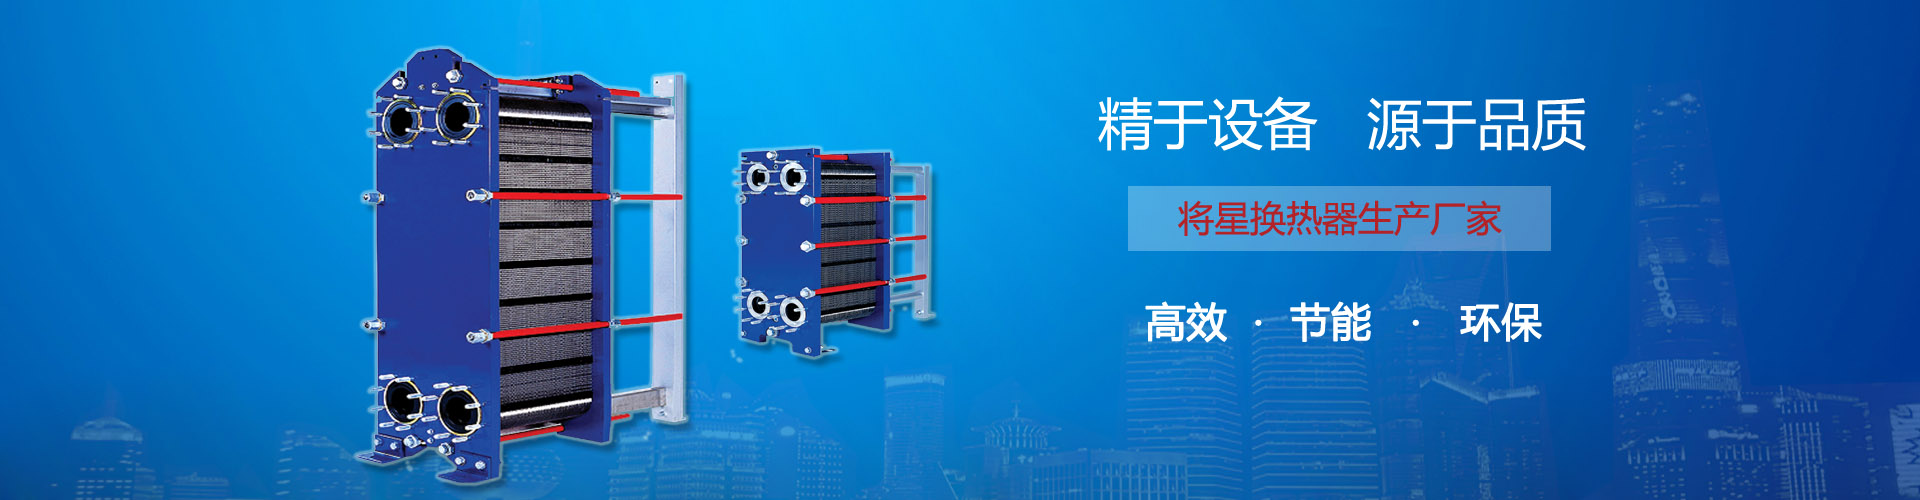 上海AG8服务亚洲化工设备有限公司